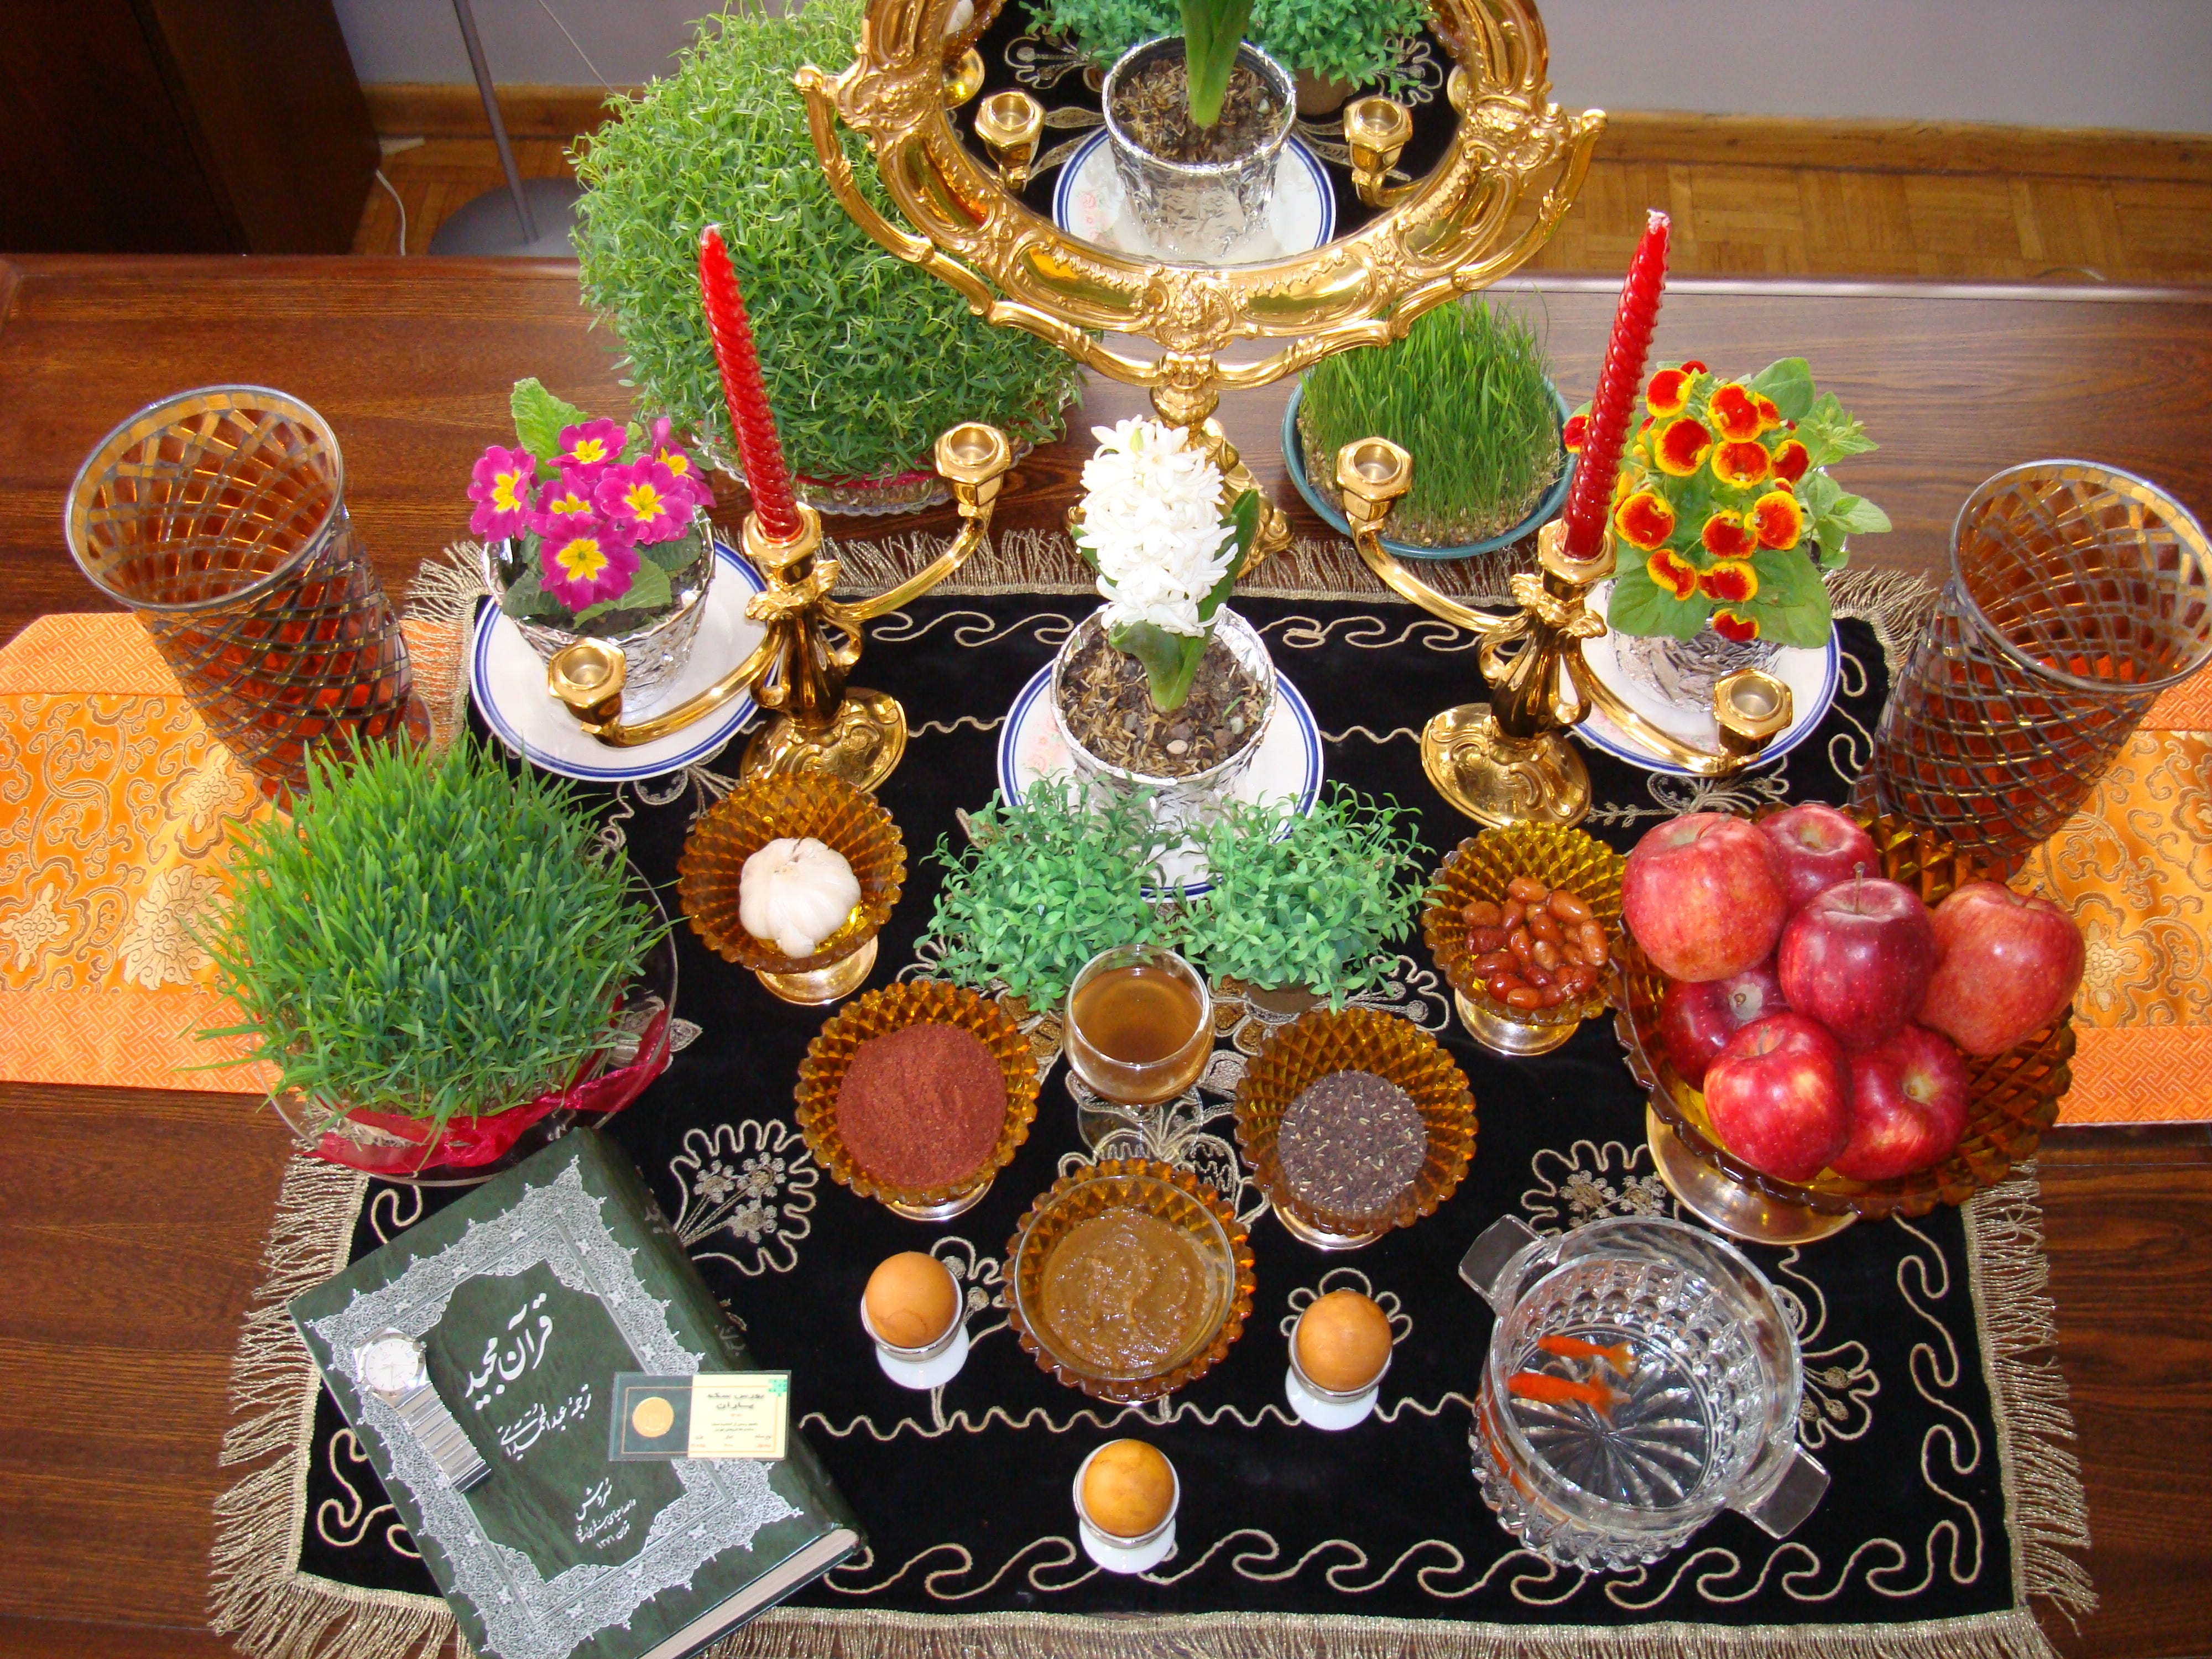 Persian New Year is around the corner! Sina Meraji Medium